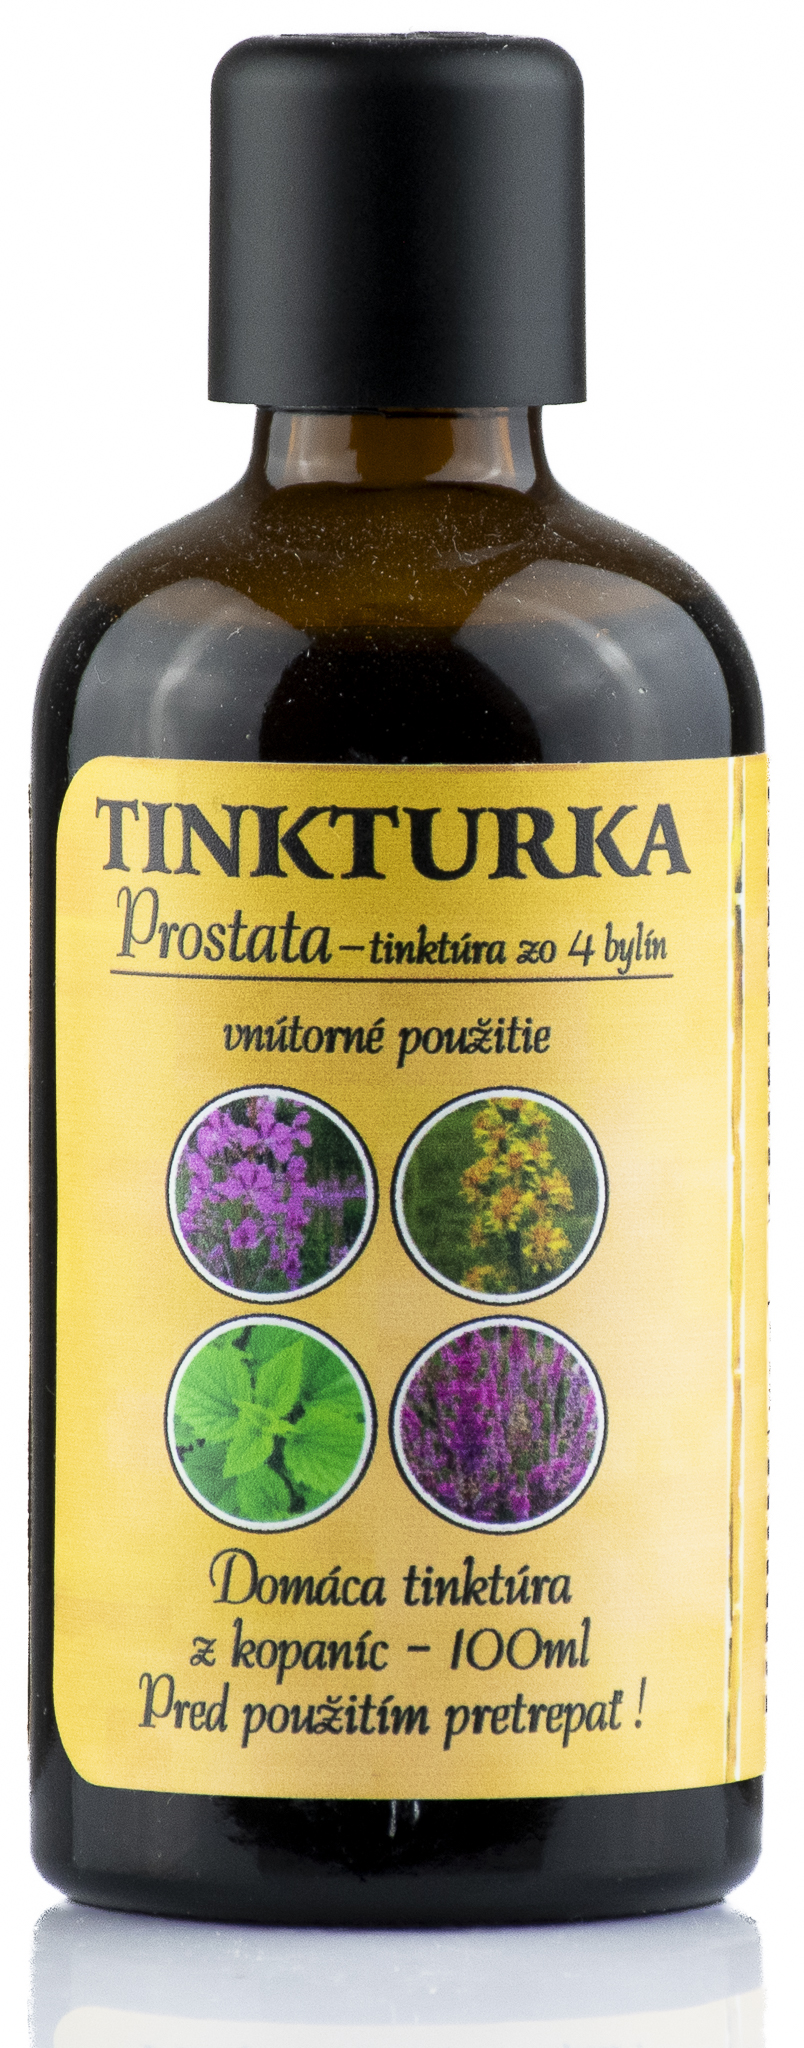 PANAKEIA TINKTURKA - Prostata 100ml